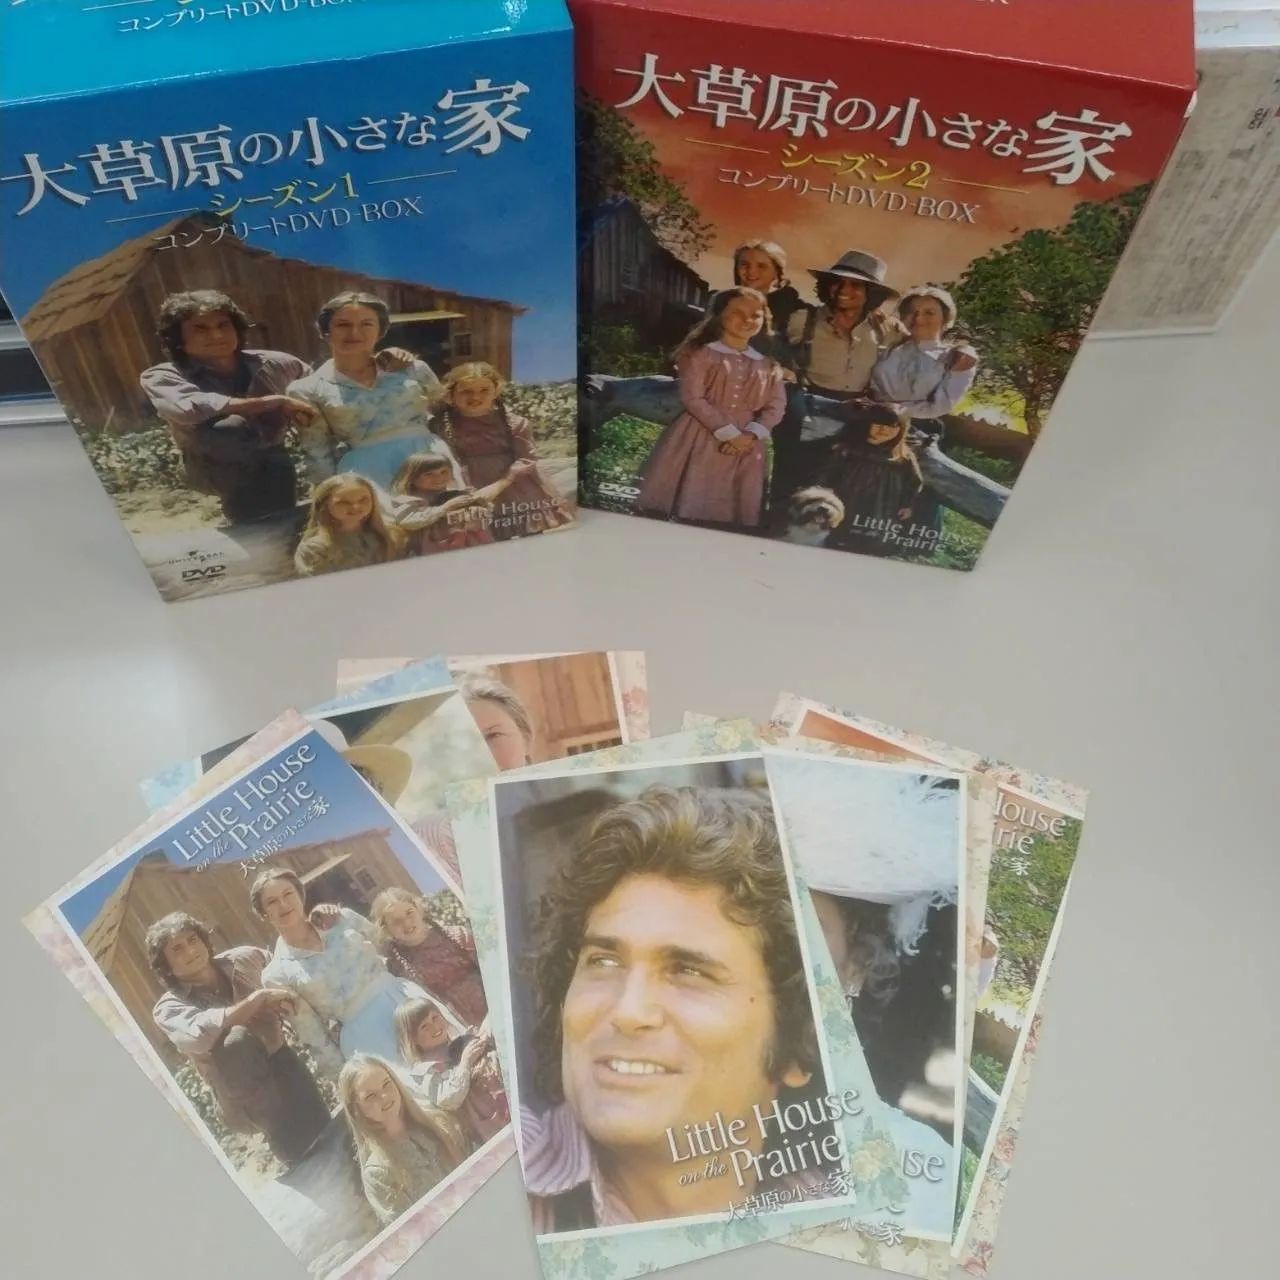 大草原の小さな家 DVDコンプリートBOX - www.sorbillomenu.com